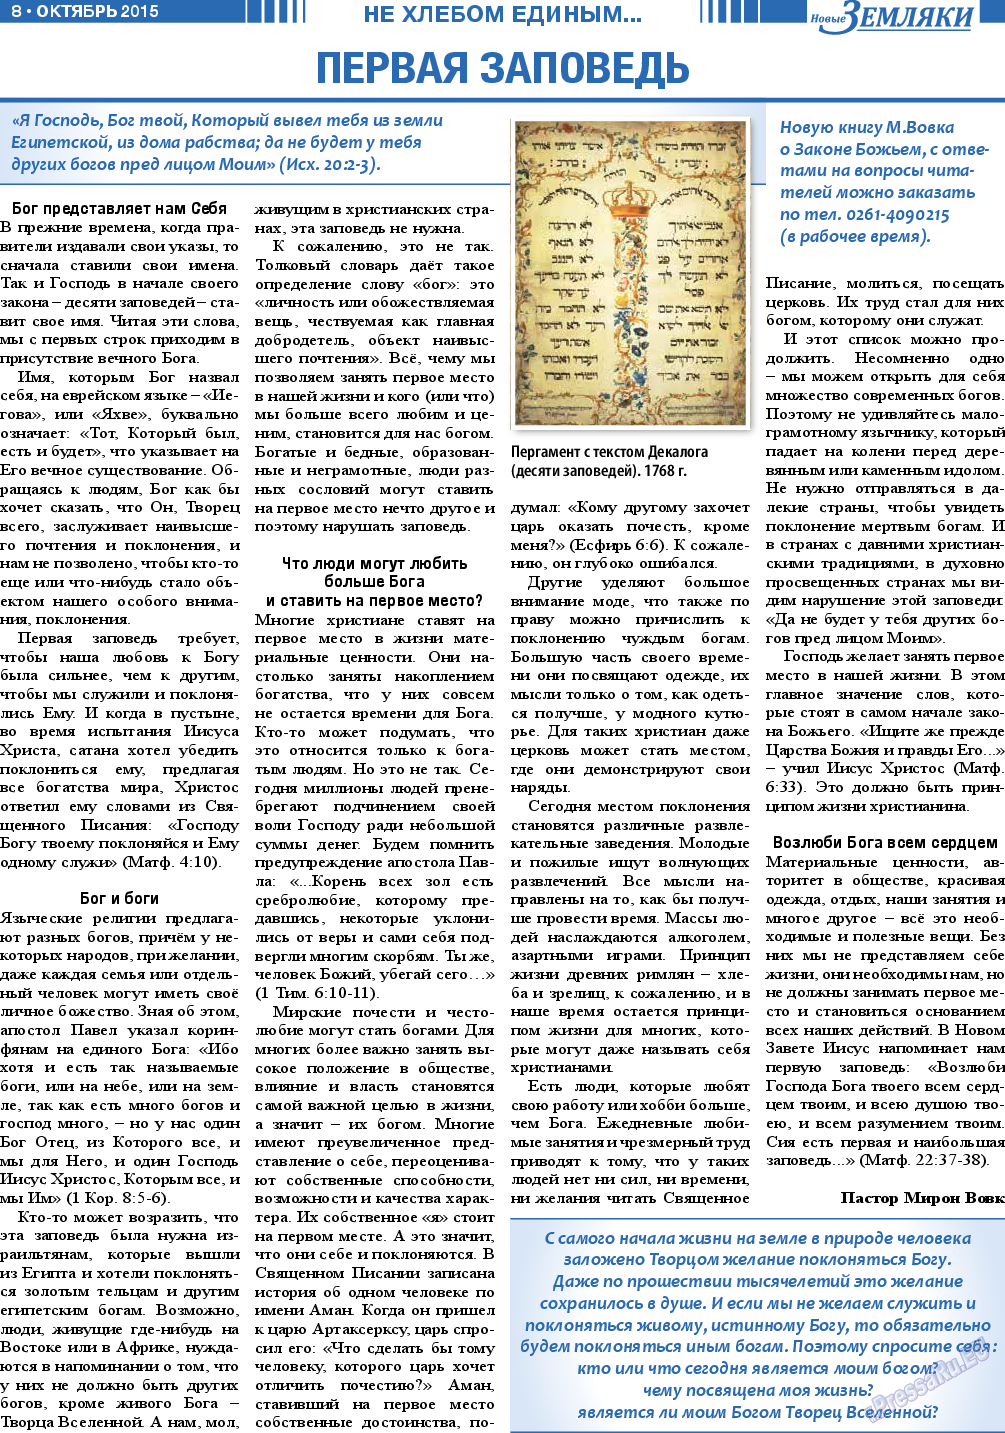 Новые Земляки, газета. 2015 №10 стр.8